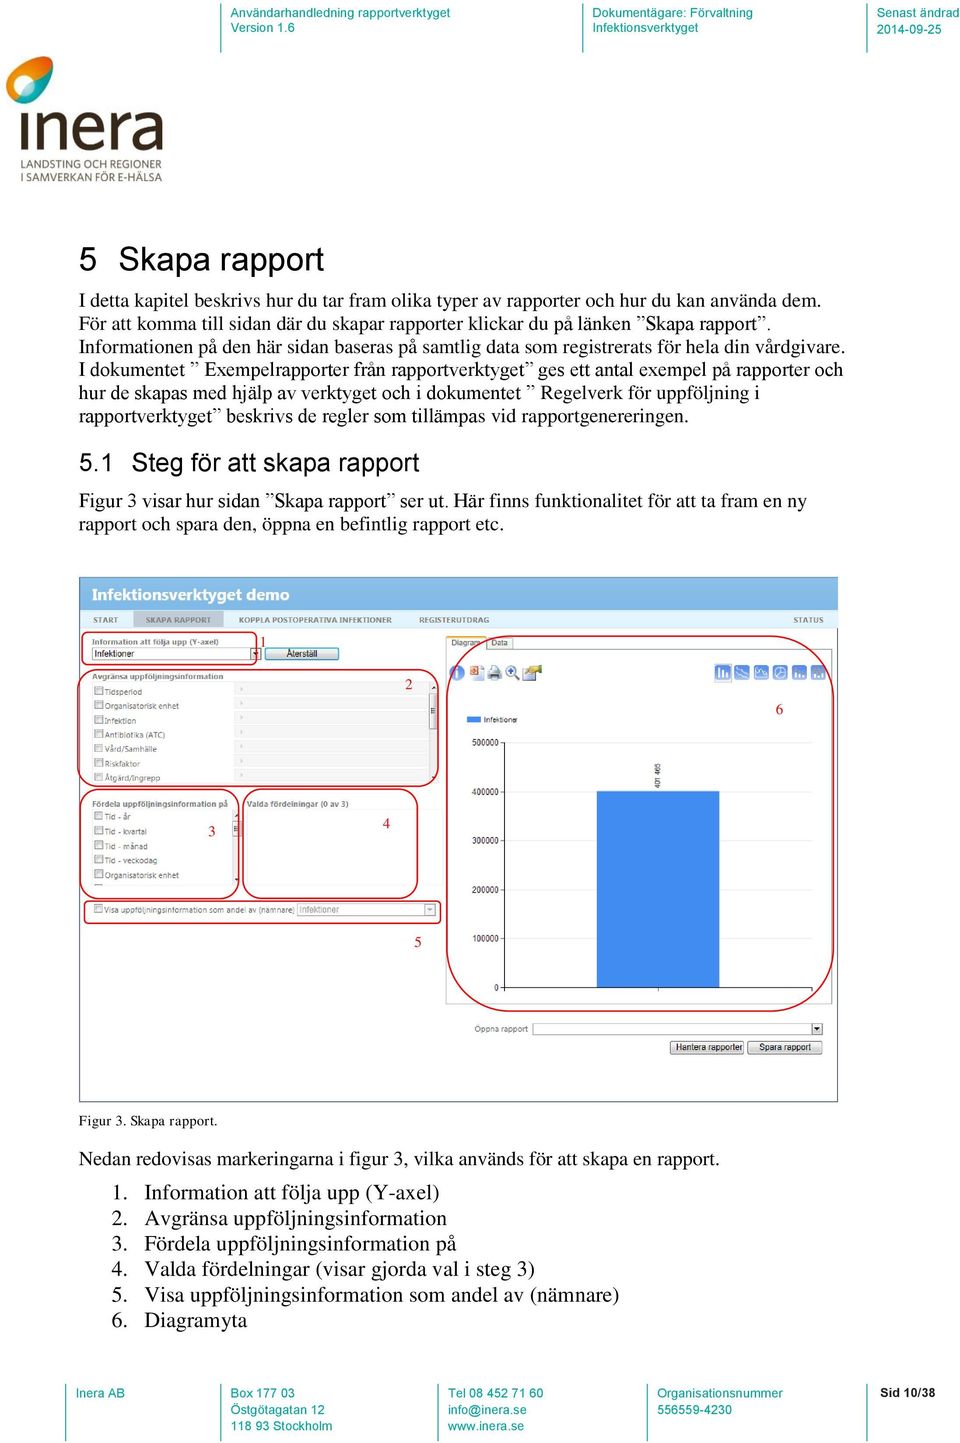 I dokumentet Exempelrapporter från rapportverktyget ges ett antal exempel på rapporter och hur de skapas med hjälp av verktyget och i dokumentet Regelverk för uppföljning i rapportverktyget beskrivs